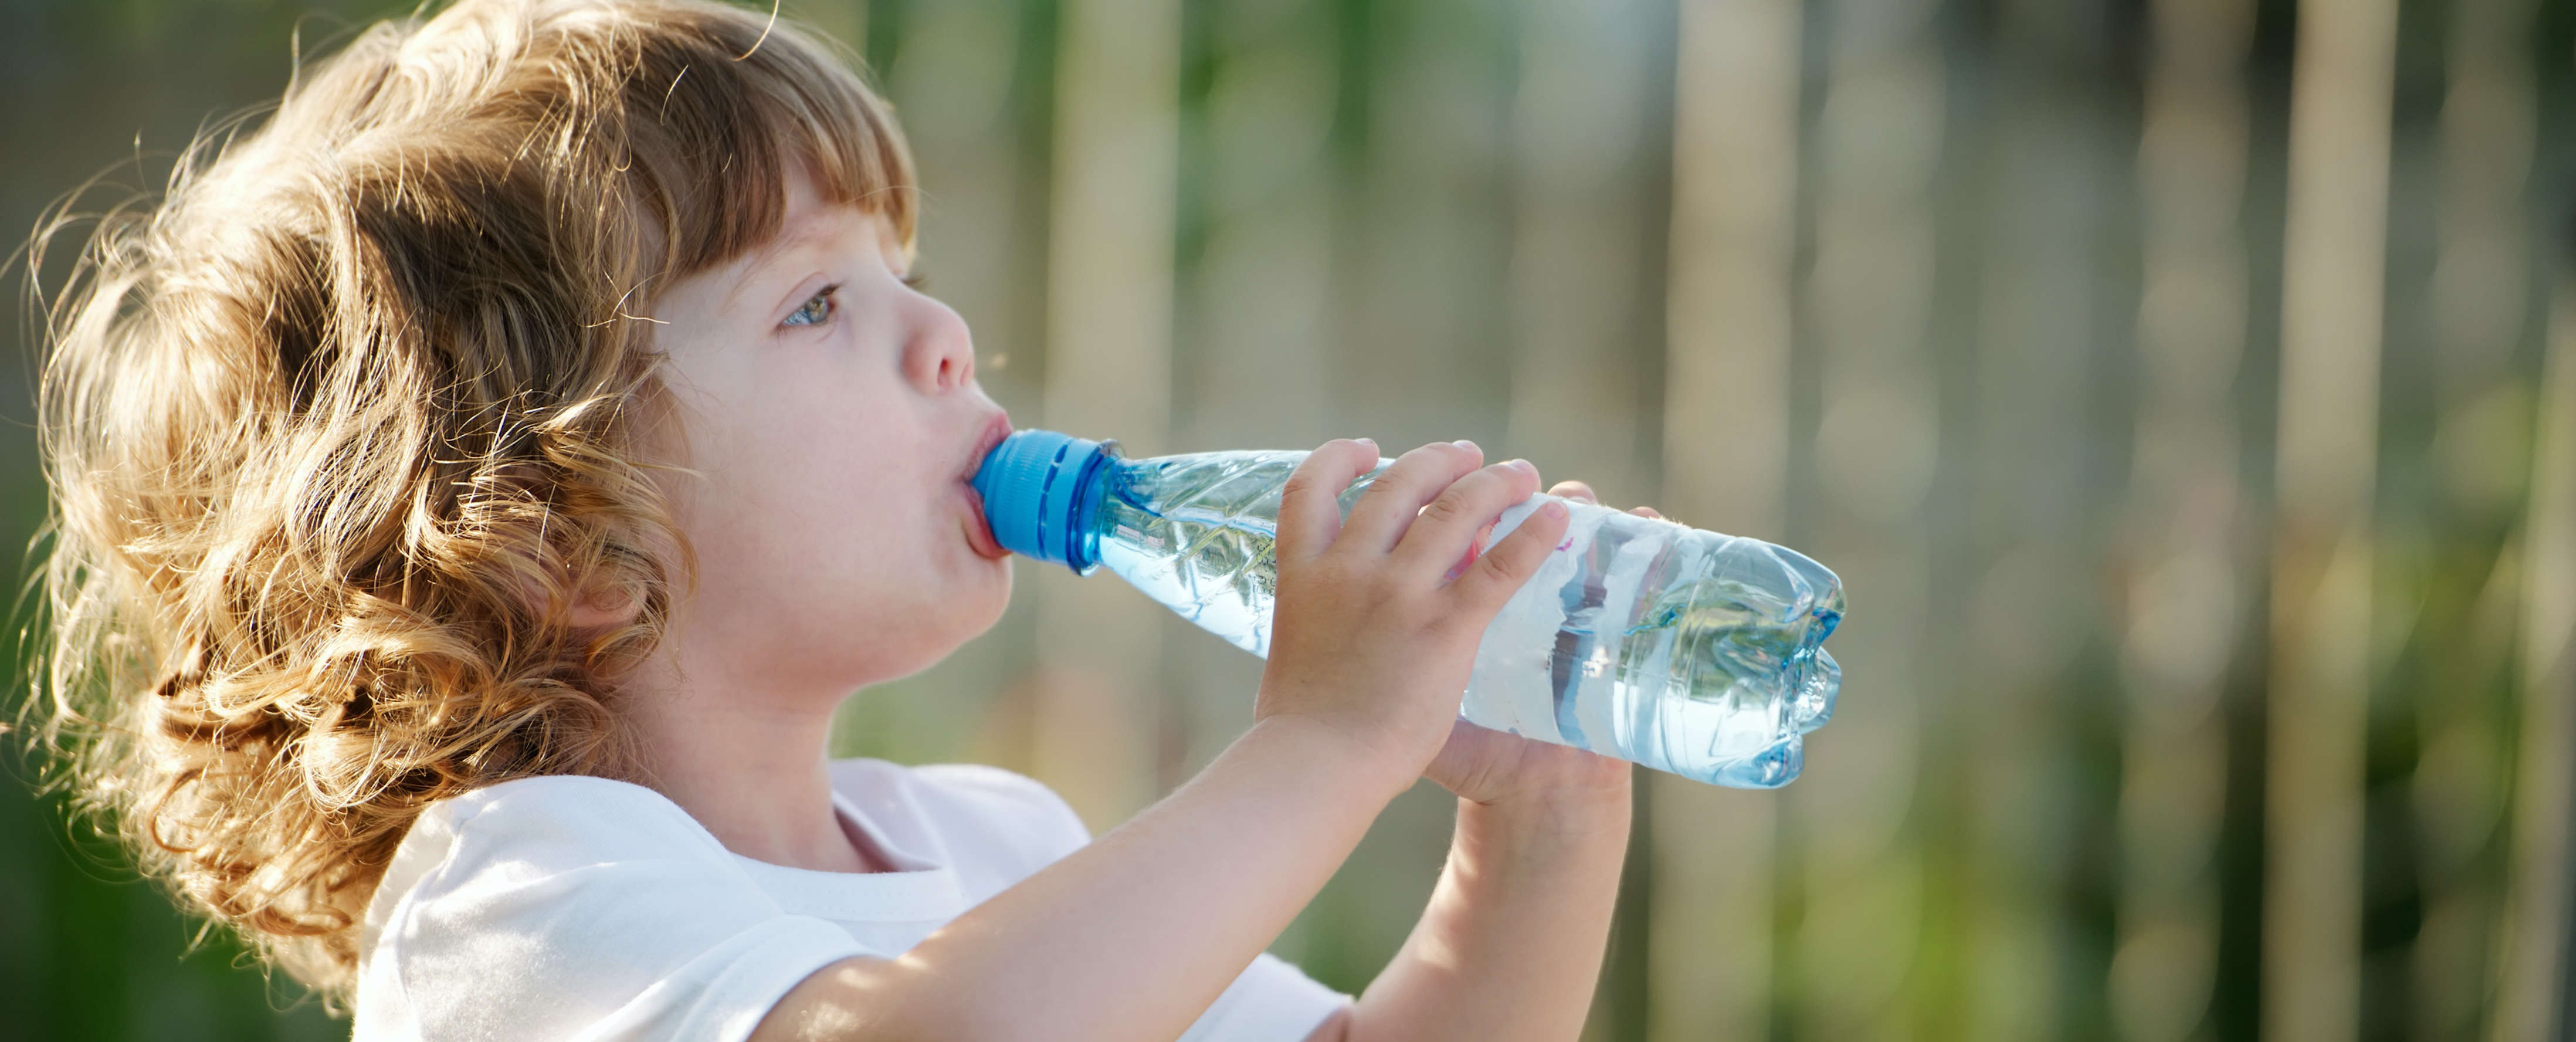 Младенцы пьют воду. Дети воды. Ребенок пьет. Человек пьет воду. Ребенок с бутылкой воды.